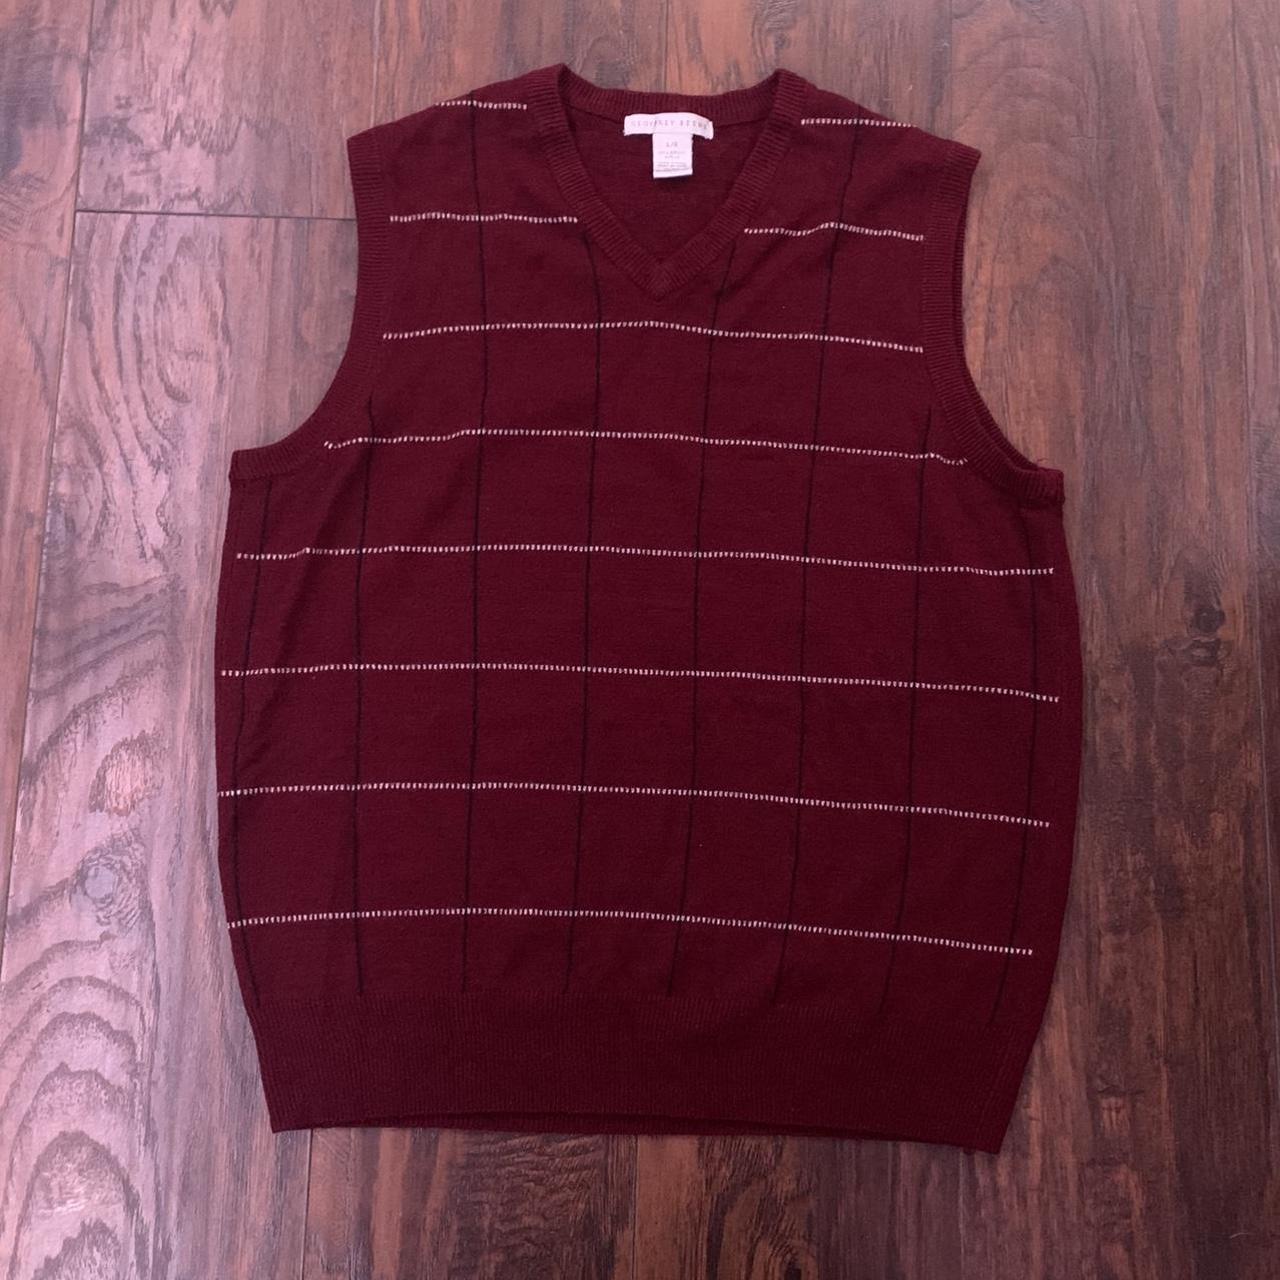 sweater vest, i’ve only worn it a few times - Depop